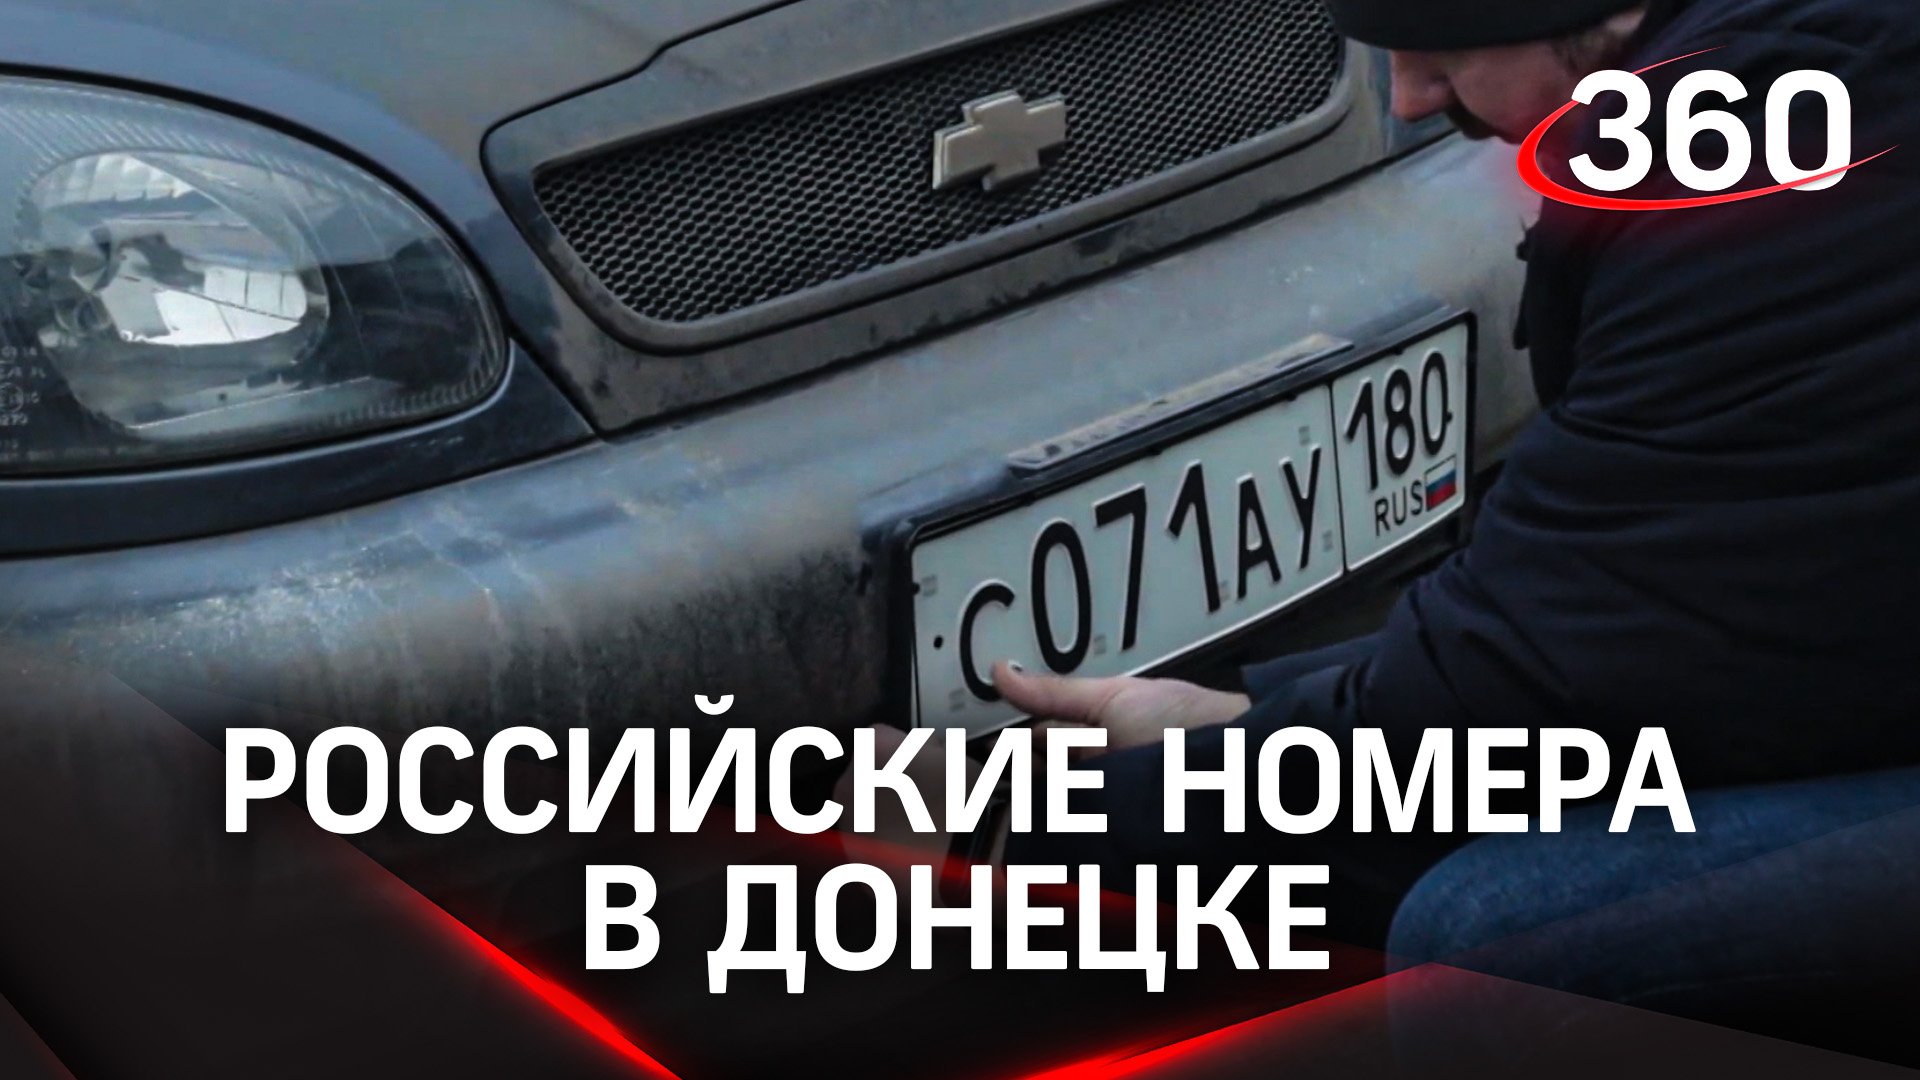 Жители Донецка получили российские номера на авто